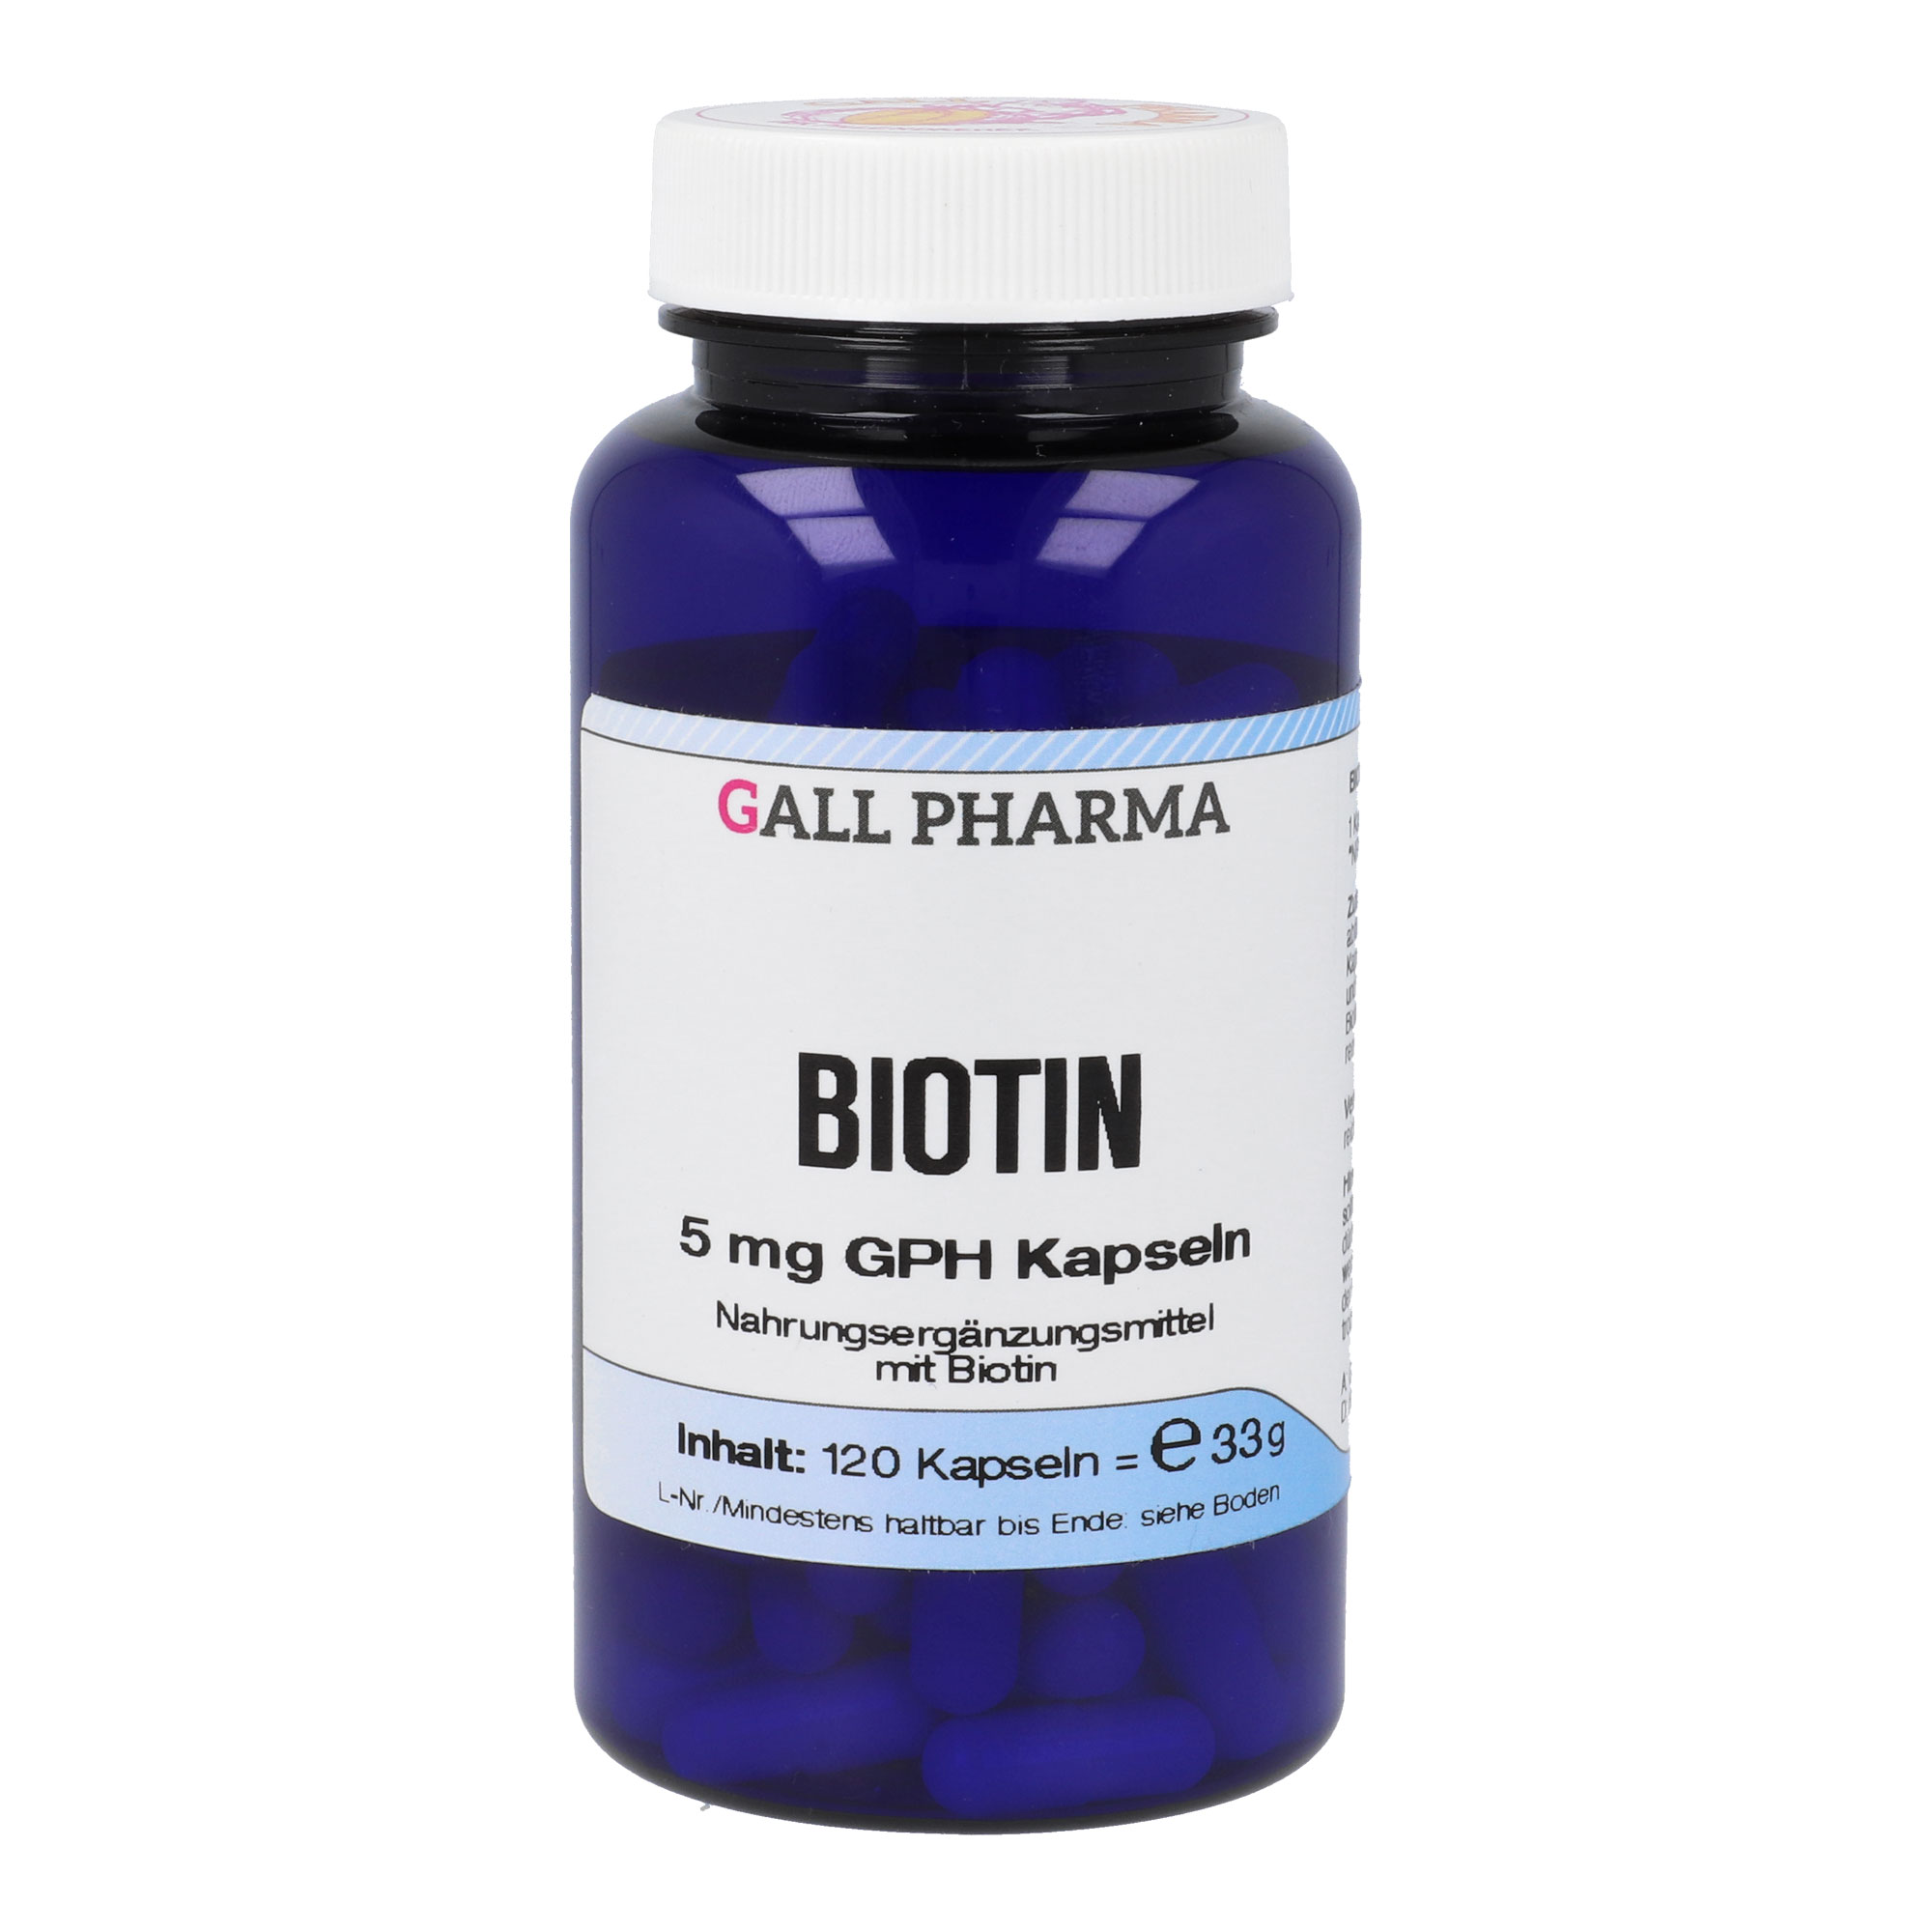 Nahrungsergänzungsmittel mit Biotin.